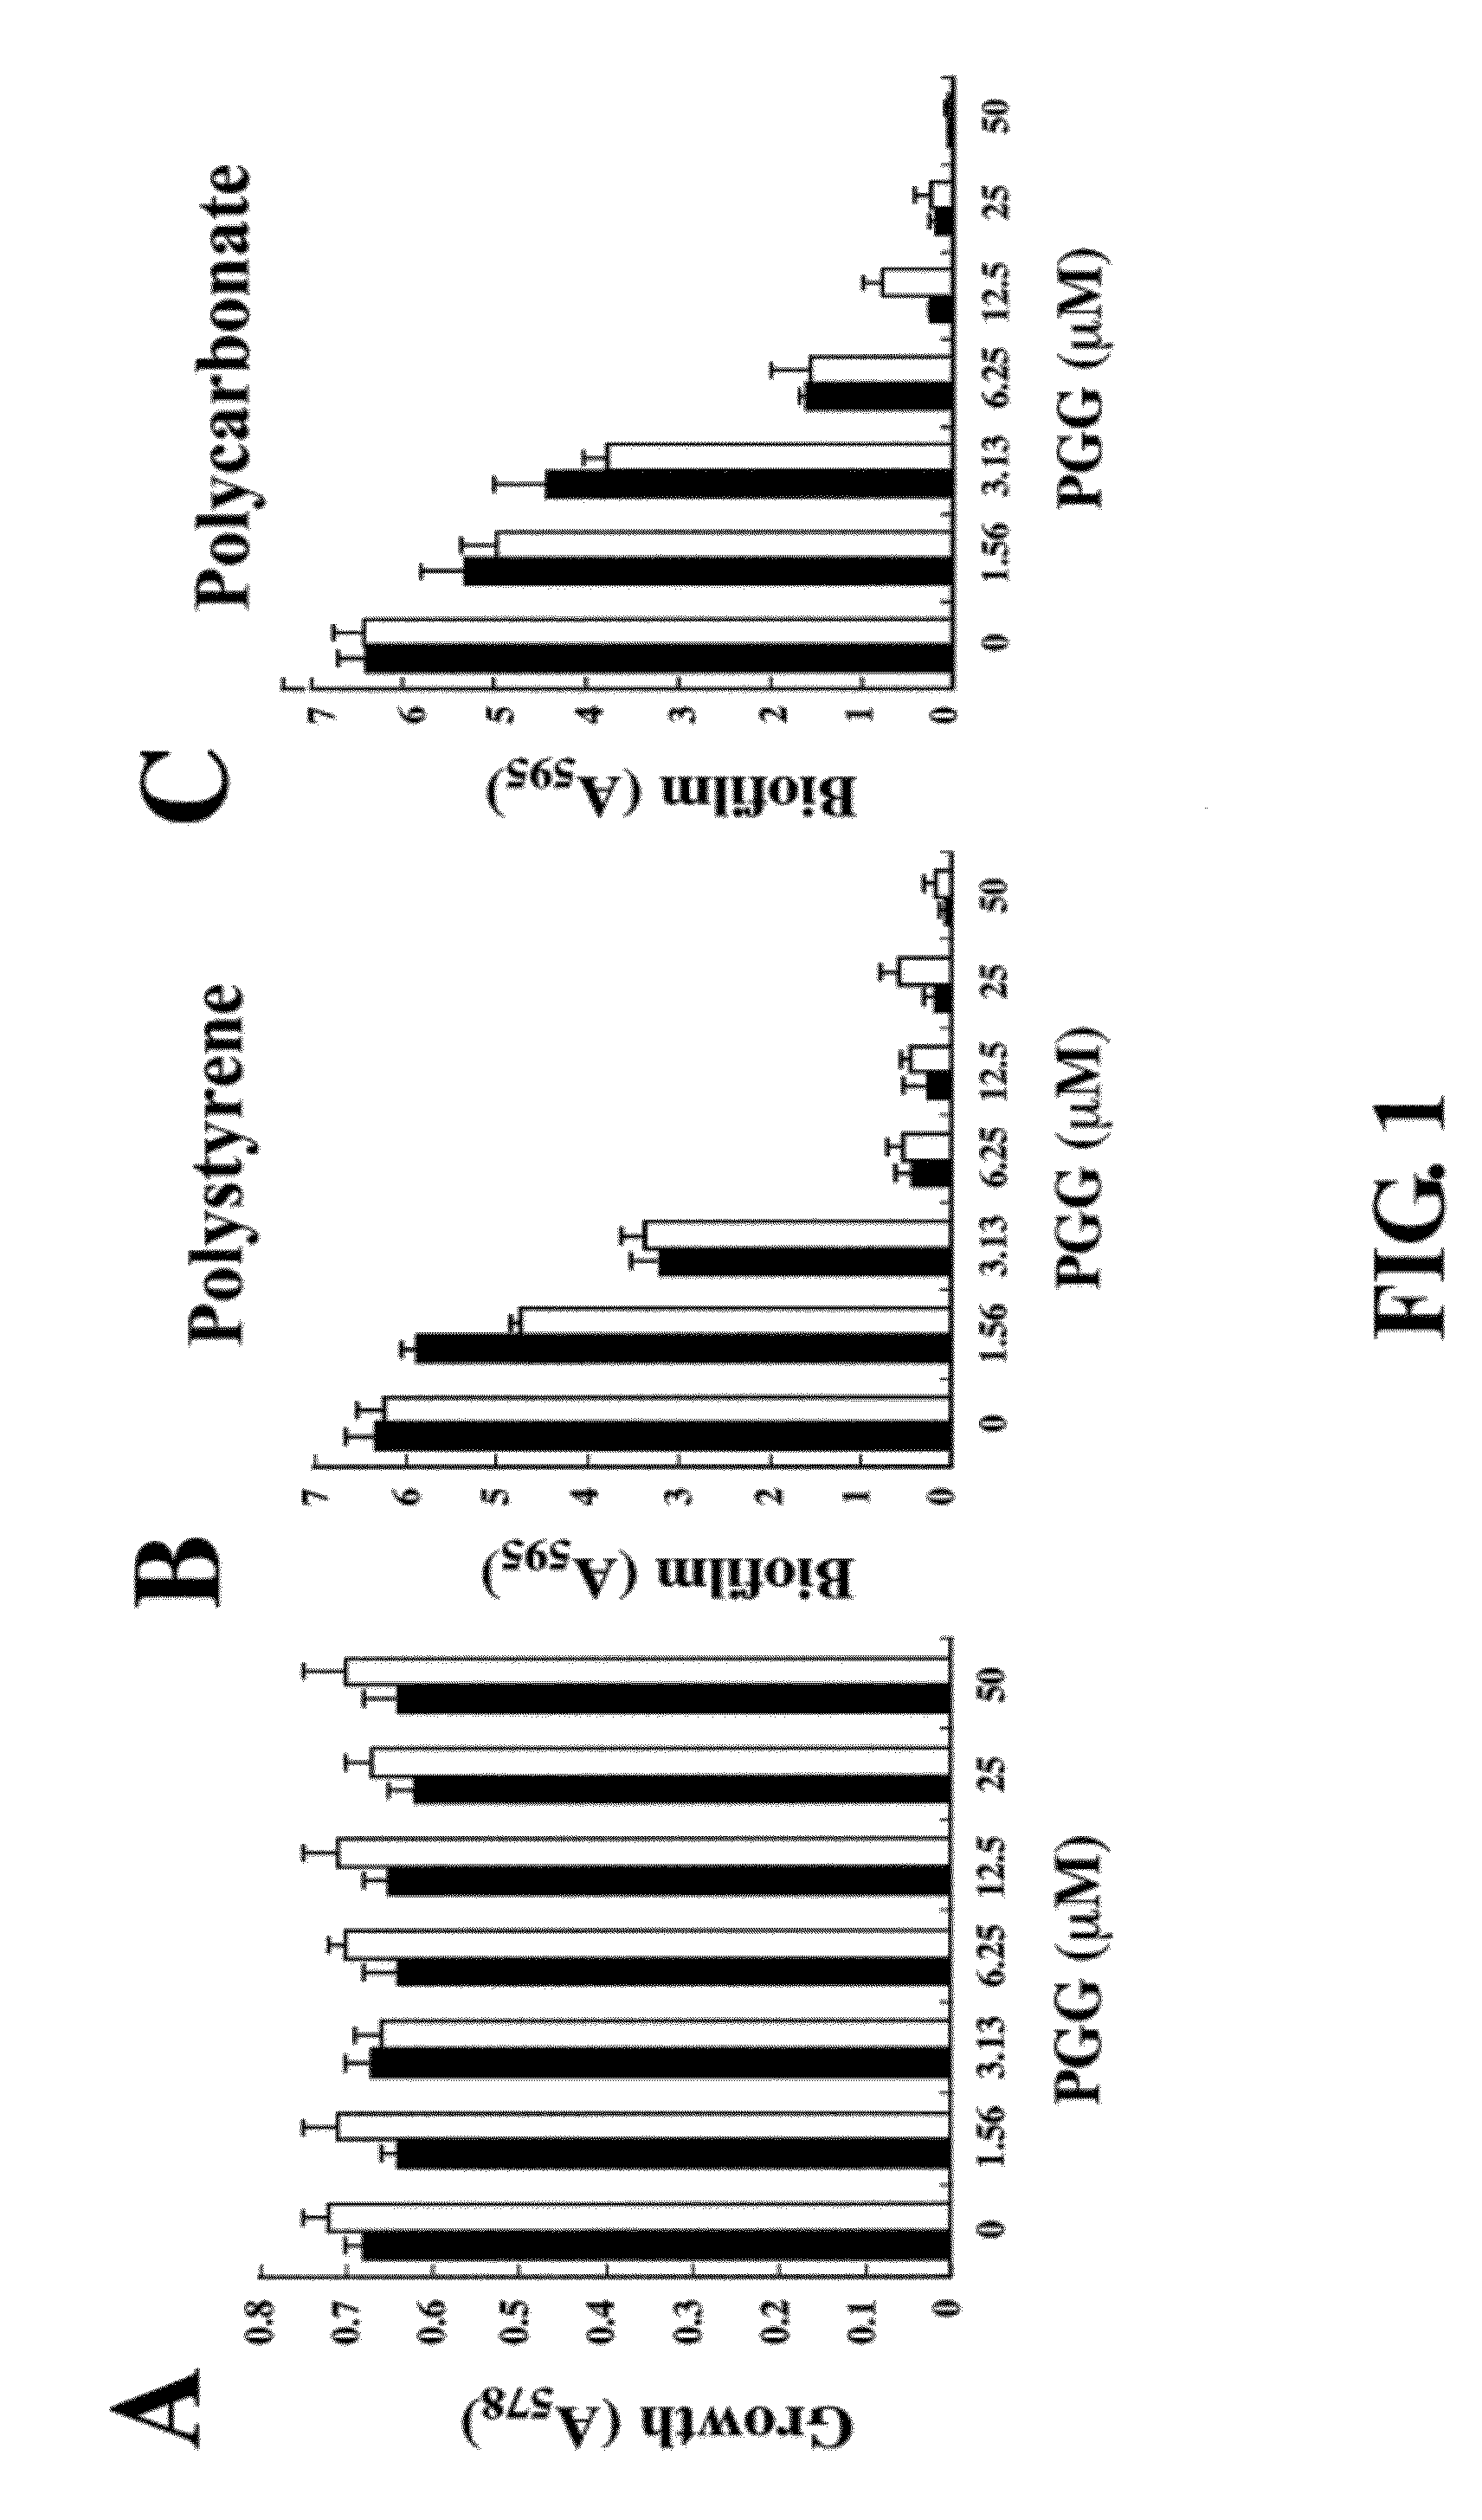 Inhibition of biofilm formation by 1,2,3,4,6-penta-o-galloyl-d-glucopyranose